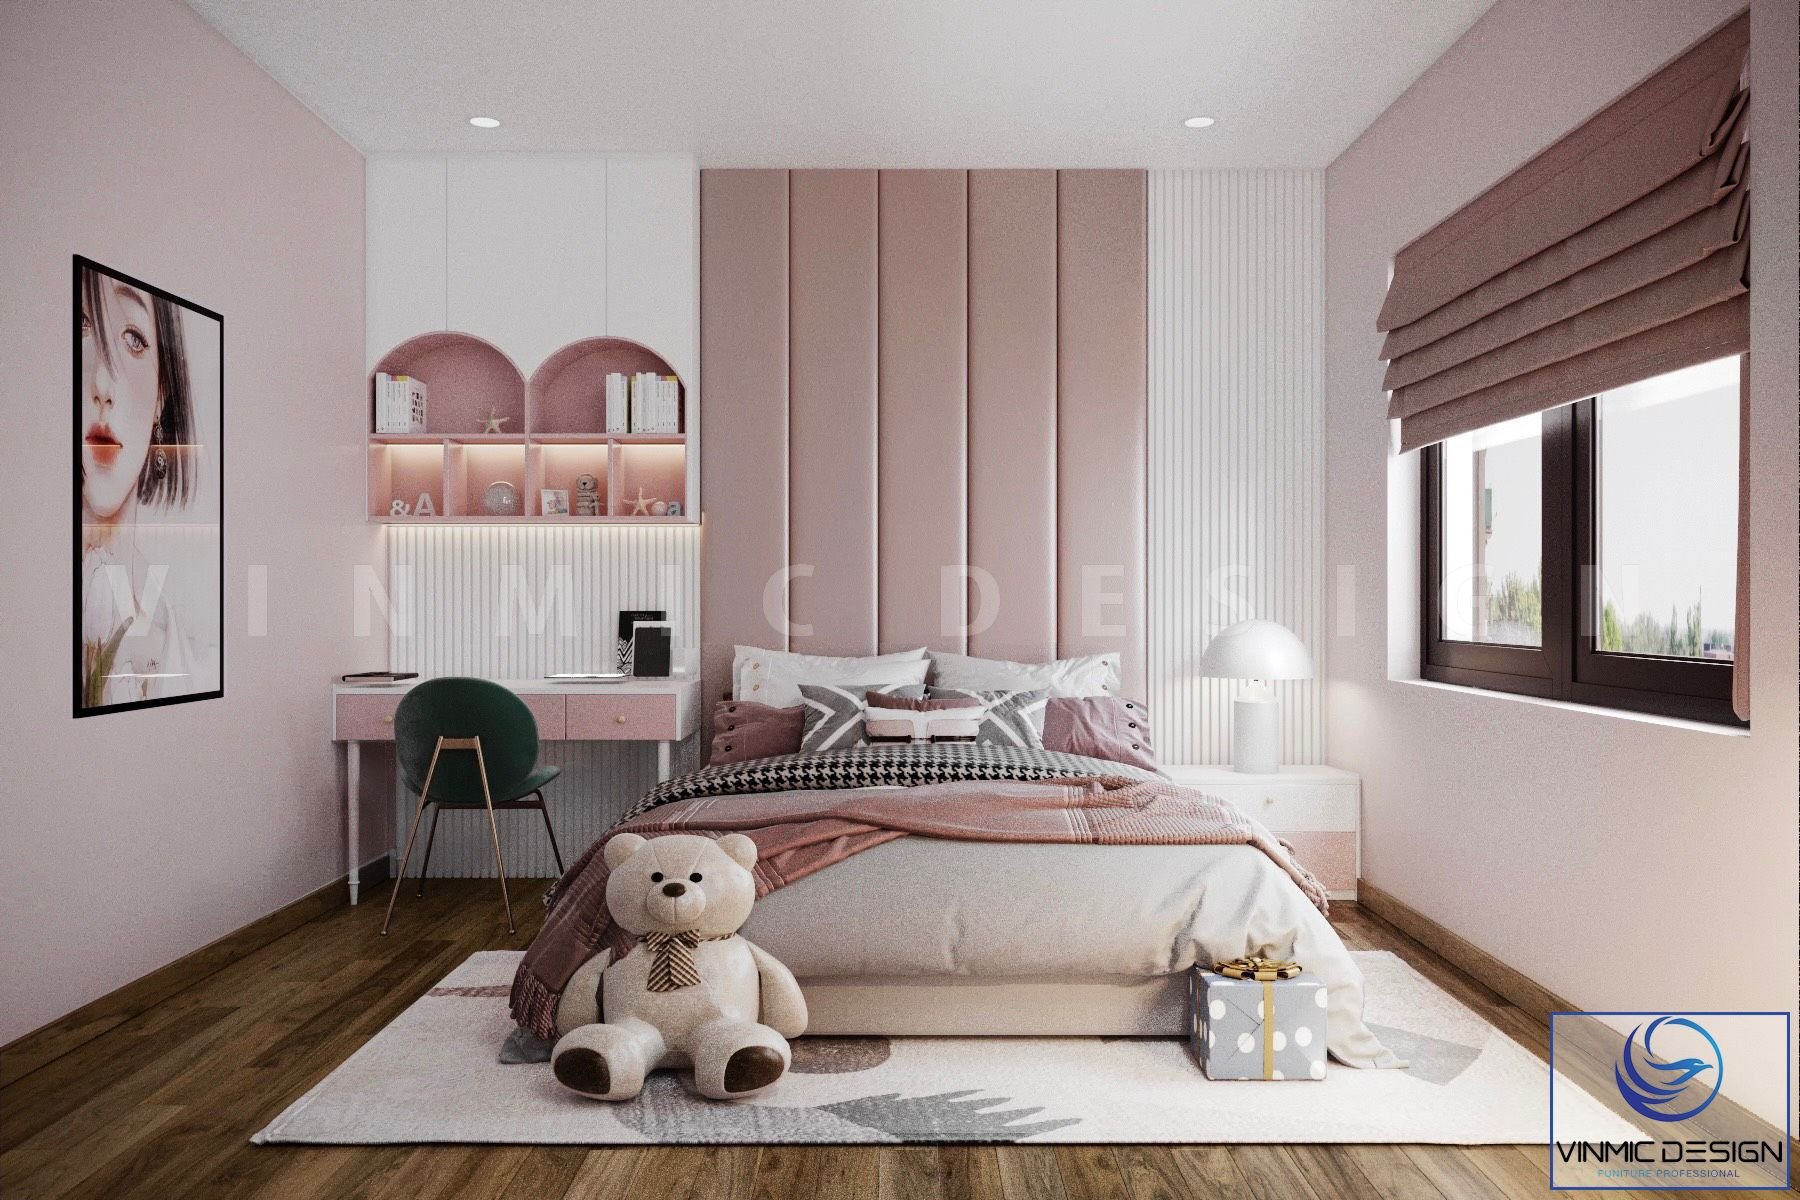 Thiết kế trang trí nội thất phòng ngủ bé gái hiện đại